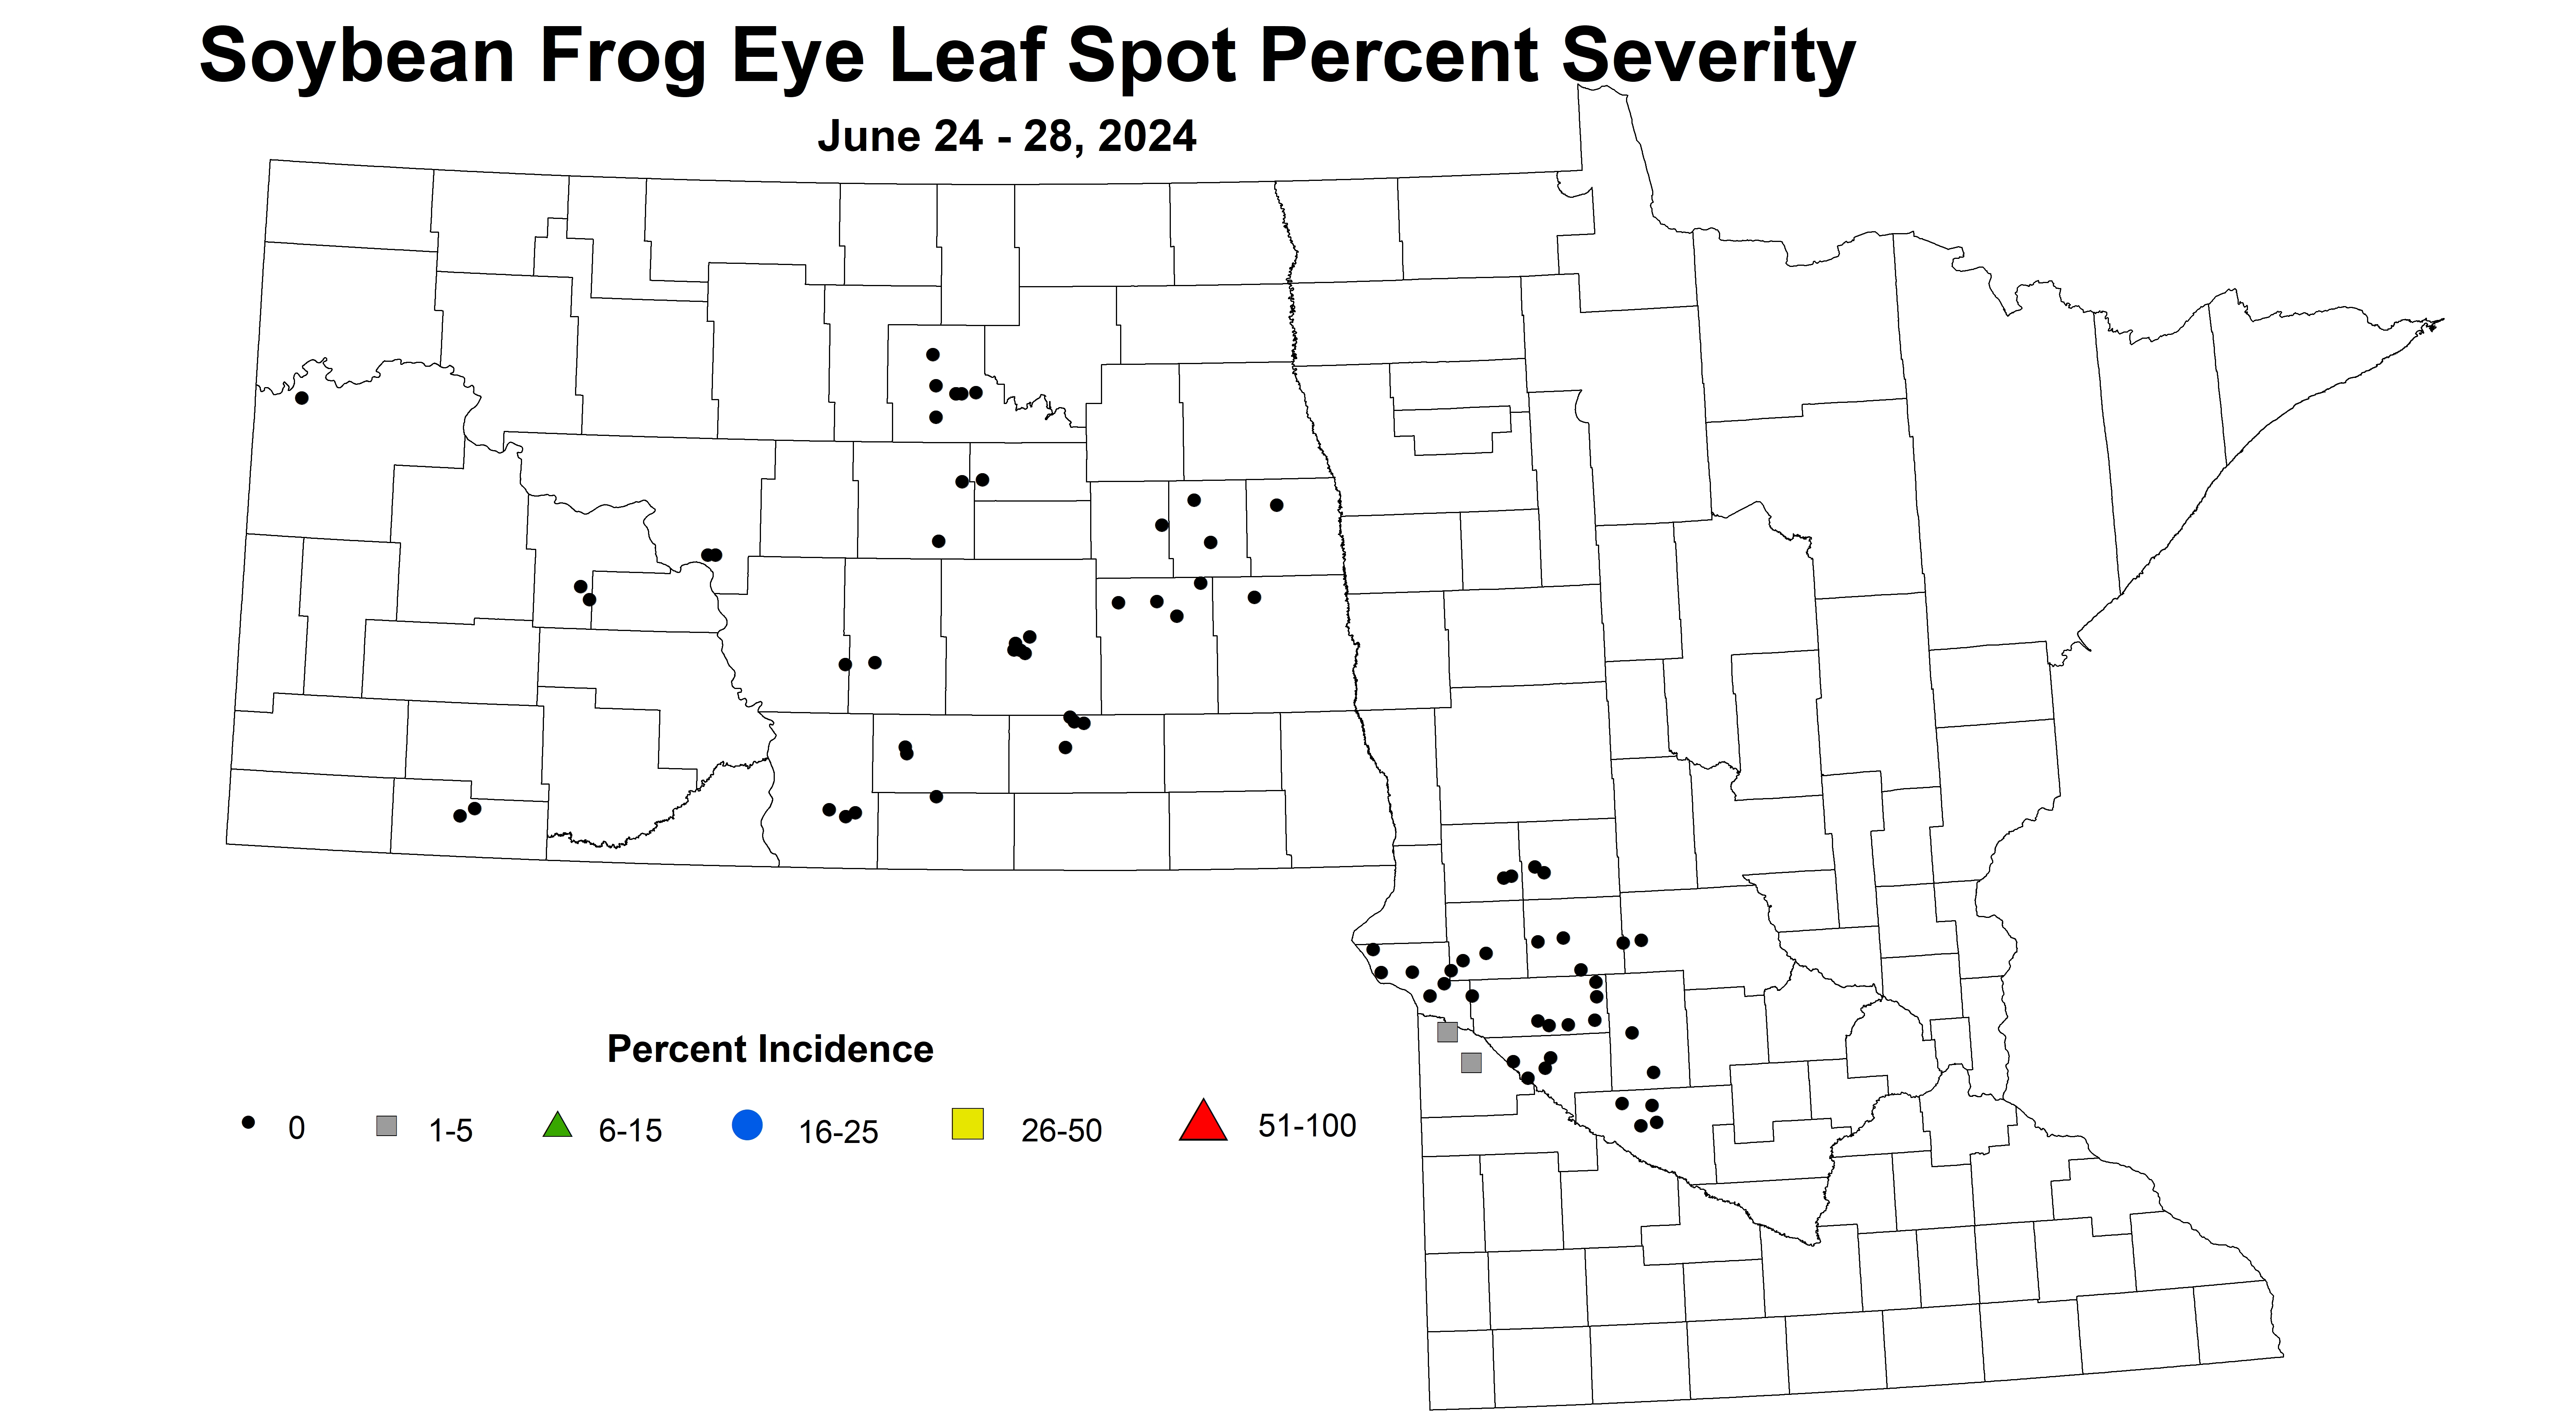 soybean frog eye leaf spot severity June 24-28 2024